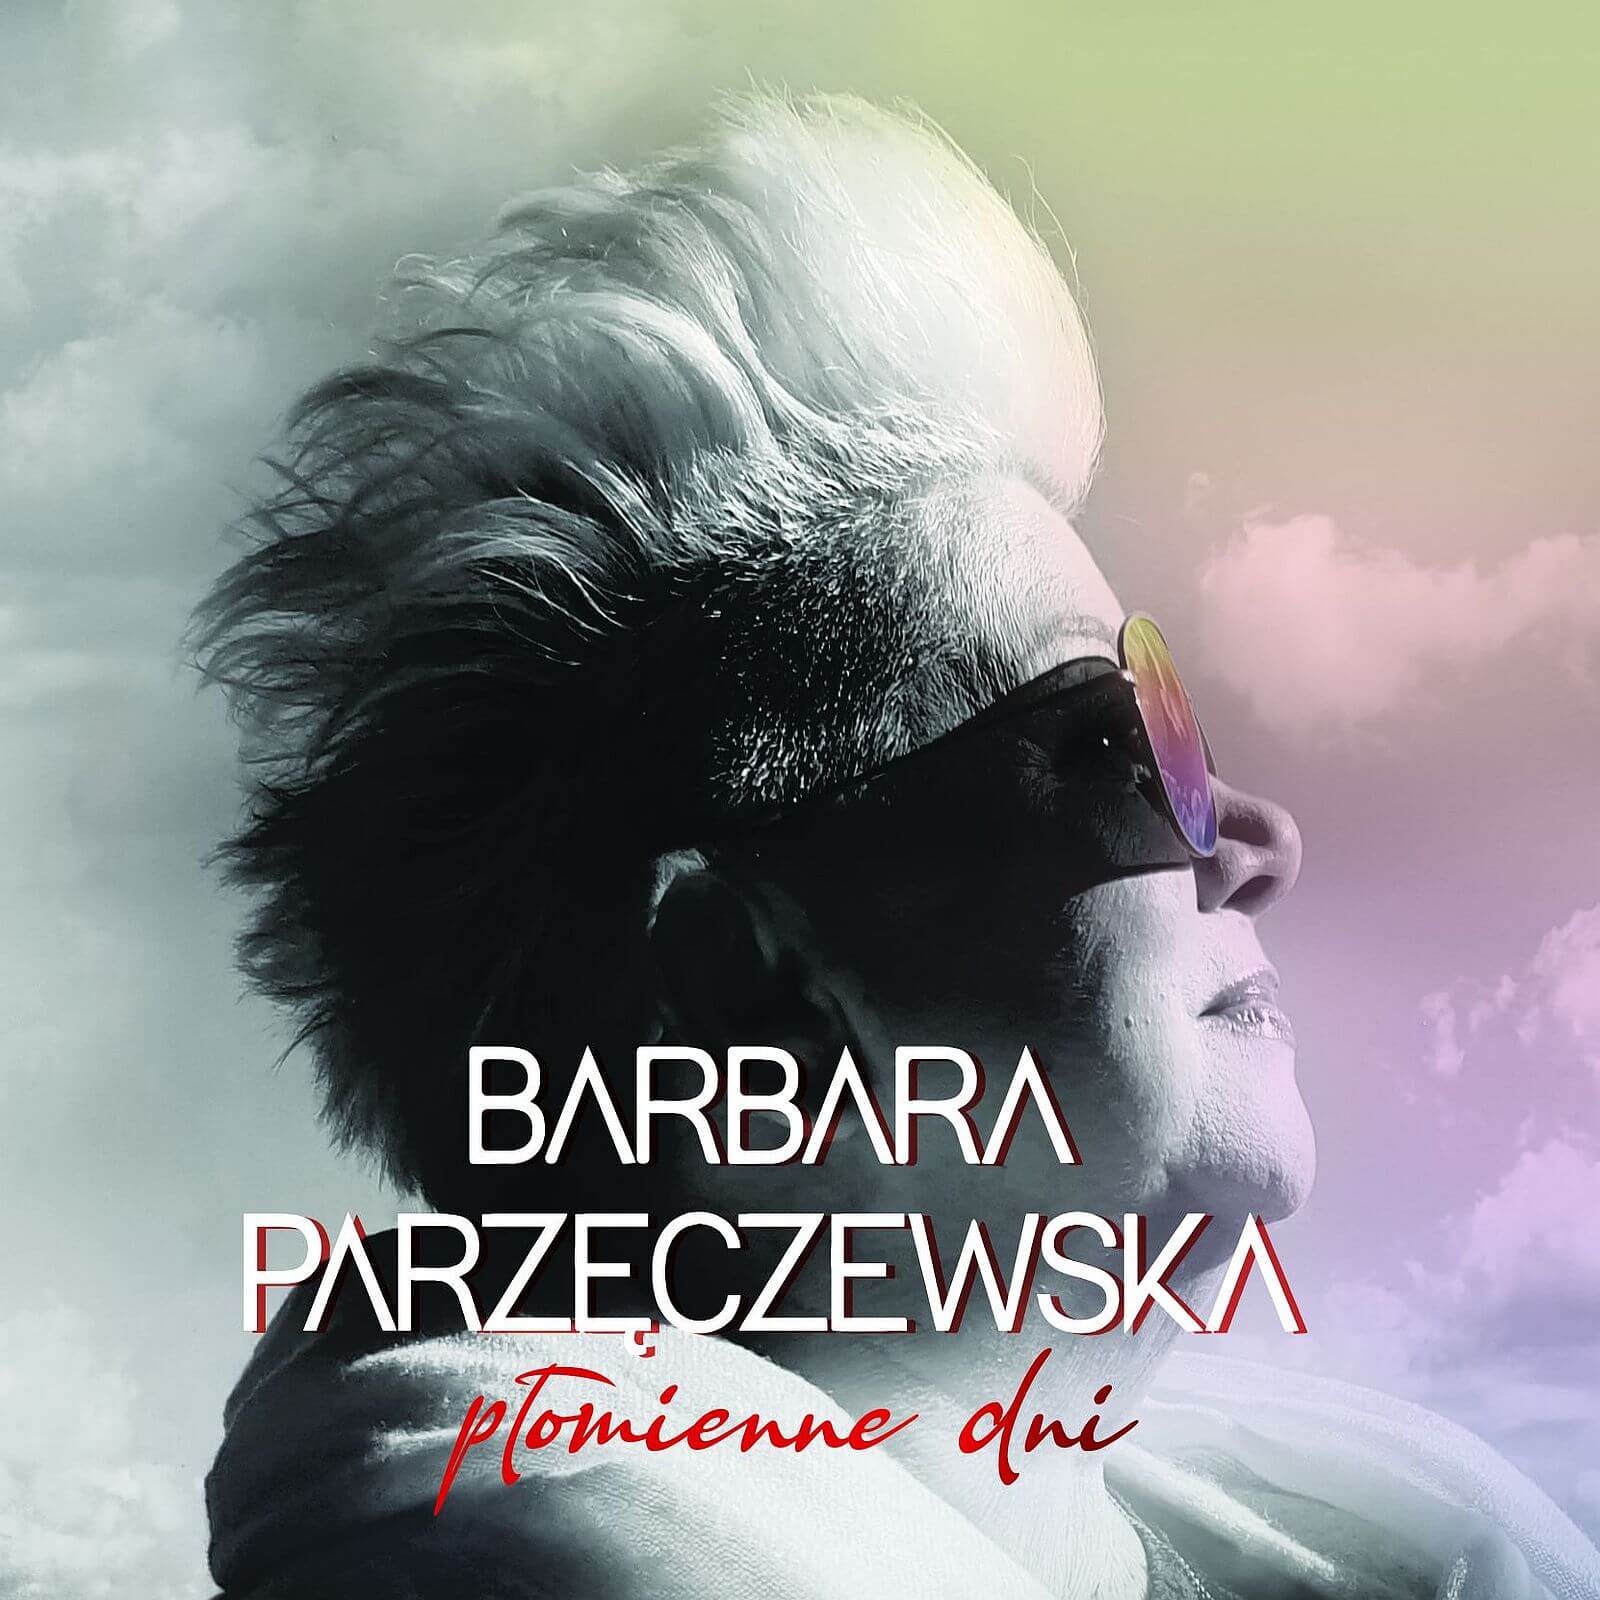 Barbara Parzęczewska